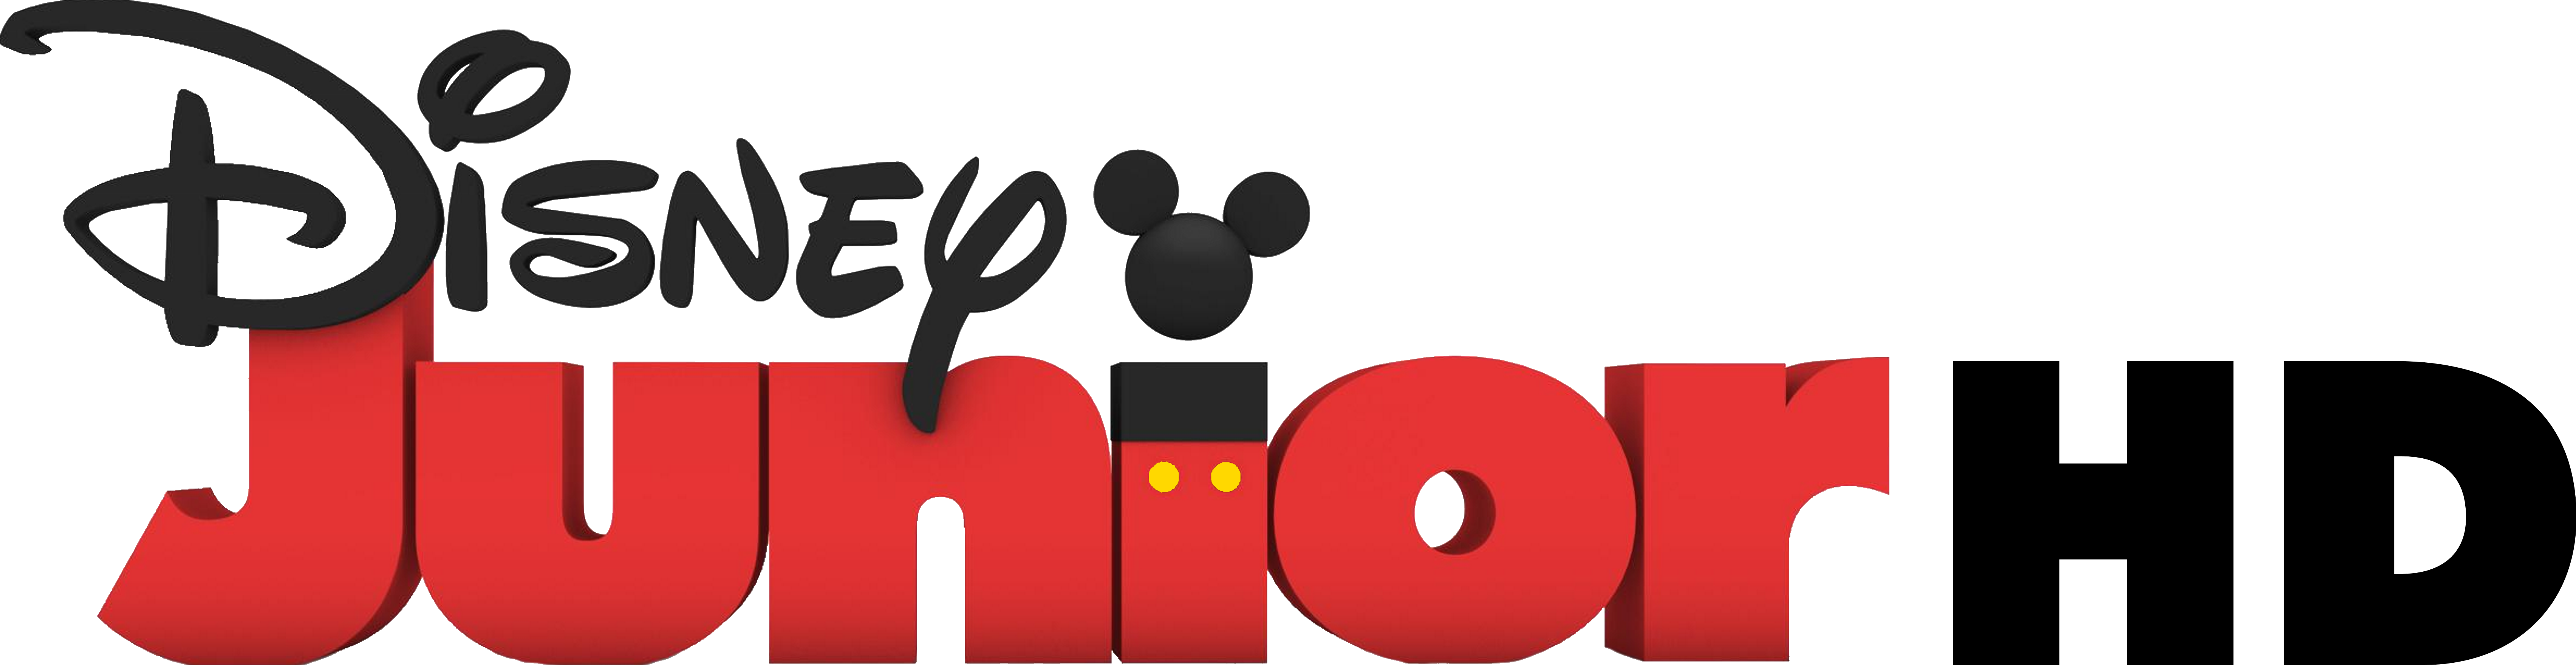 Disney Junior Logo Color by MrMickeytastic on DeviantArt